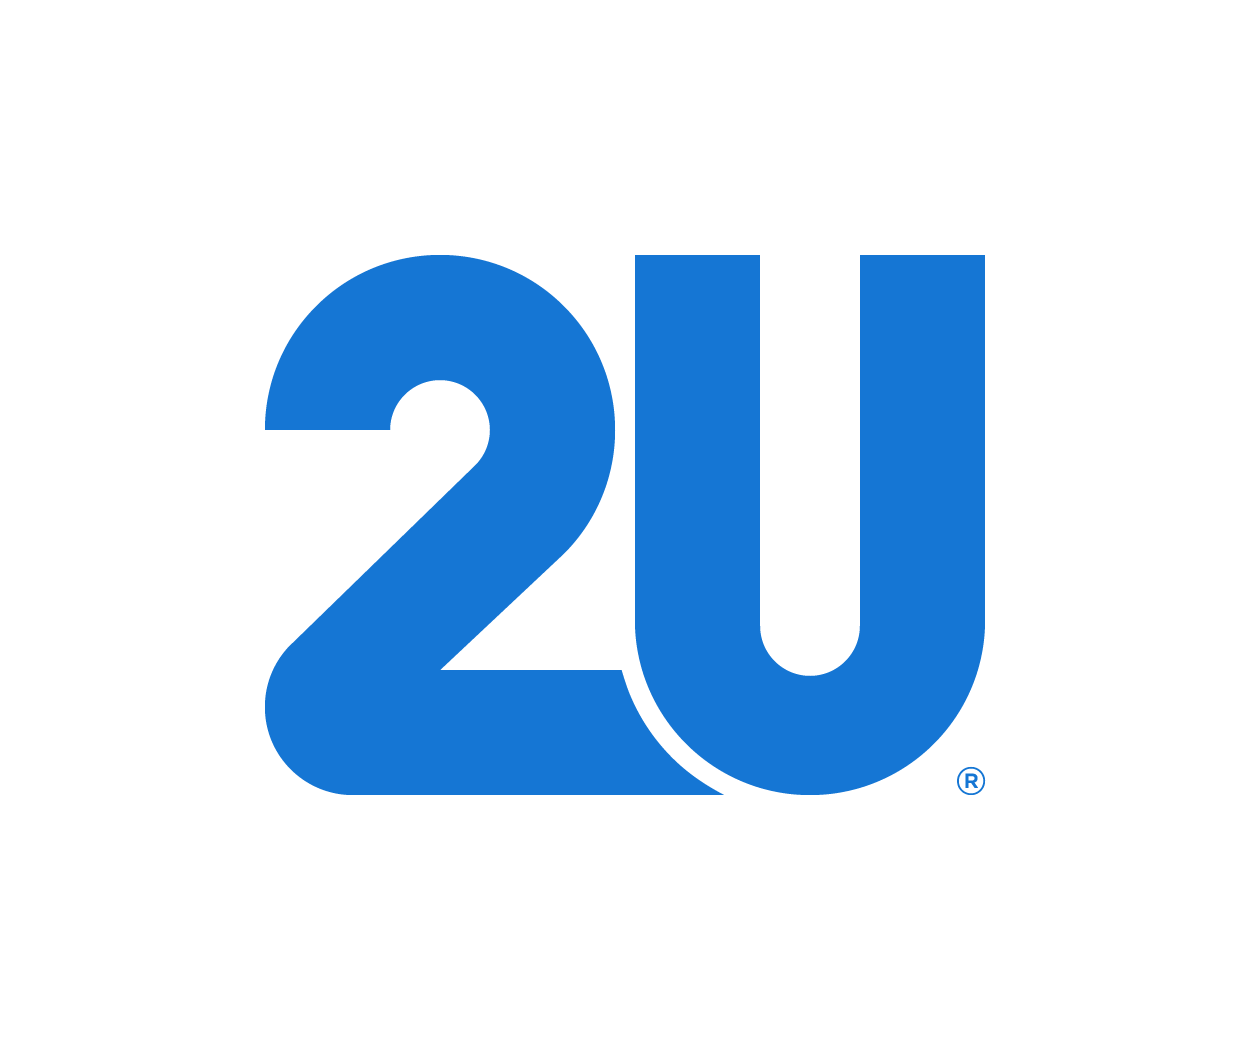 2U Inc